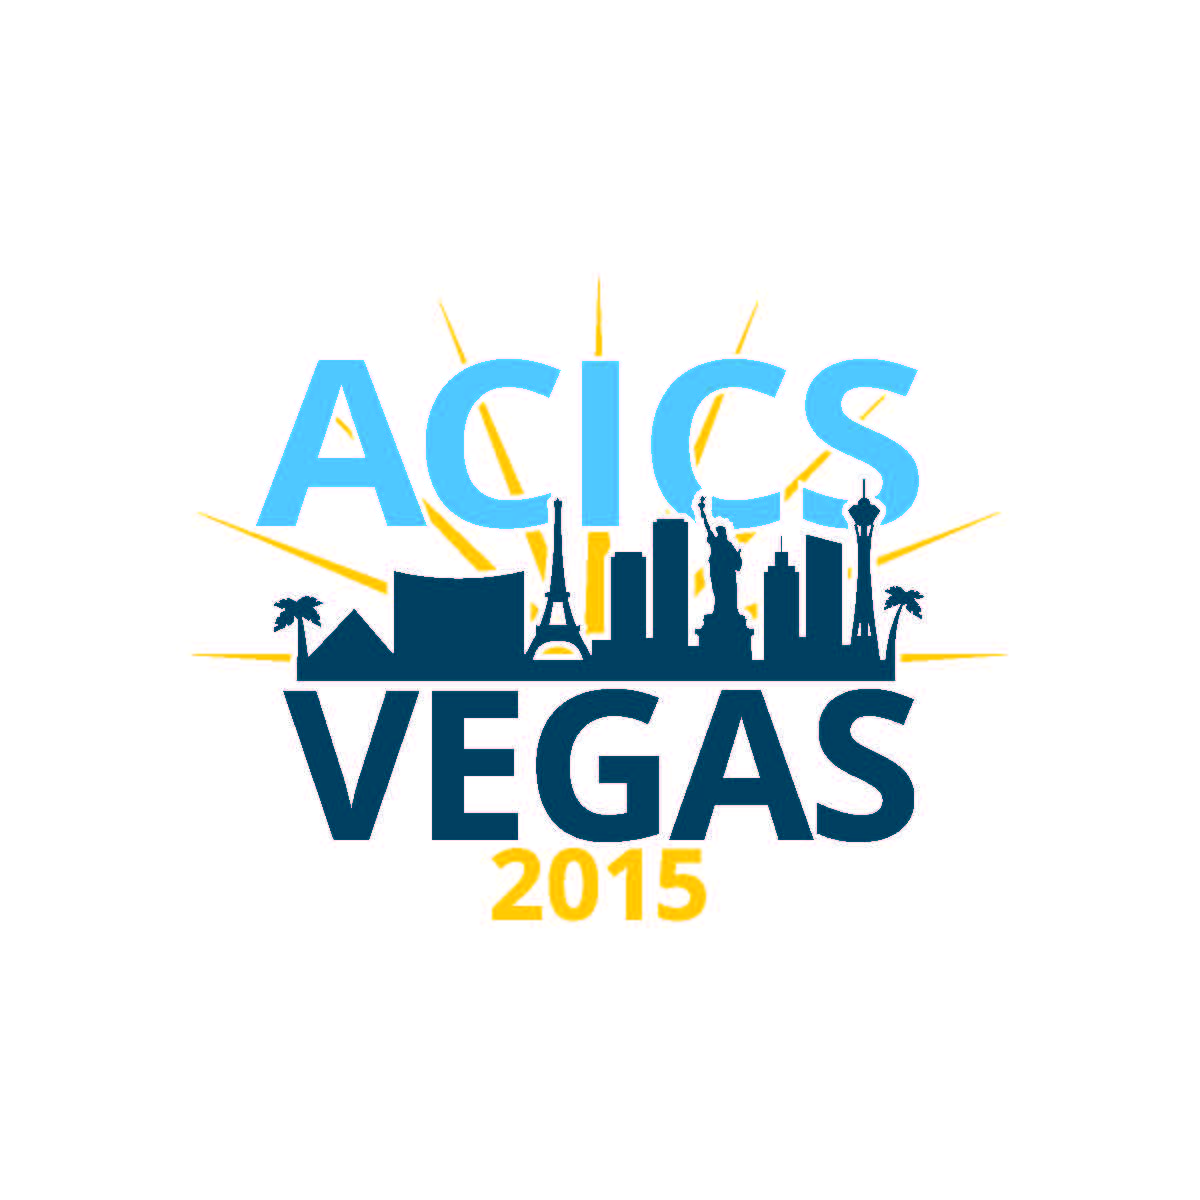 Acics Logo - ACICS | Save the Date 2015